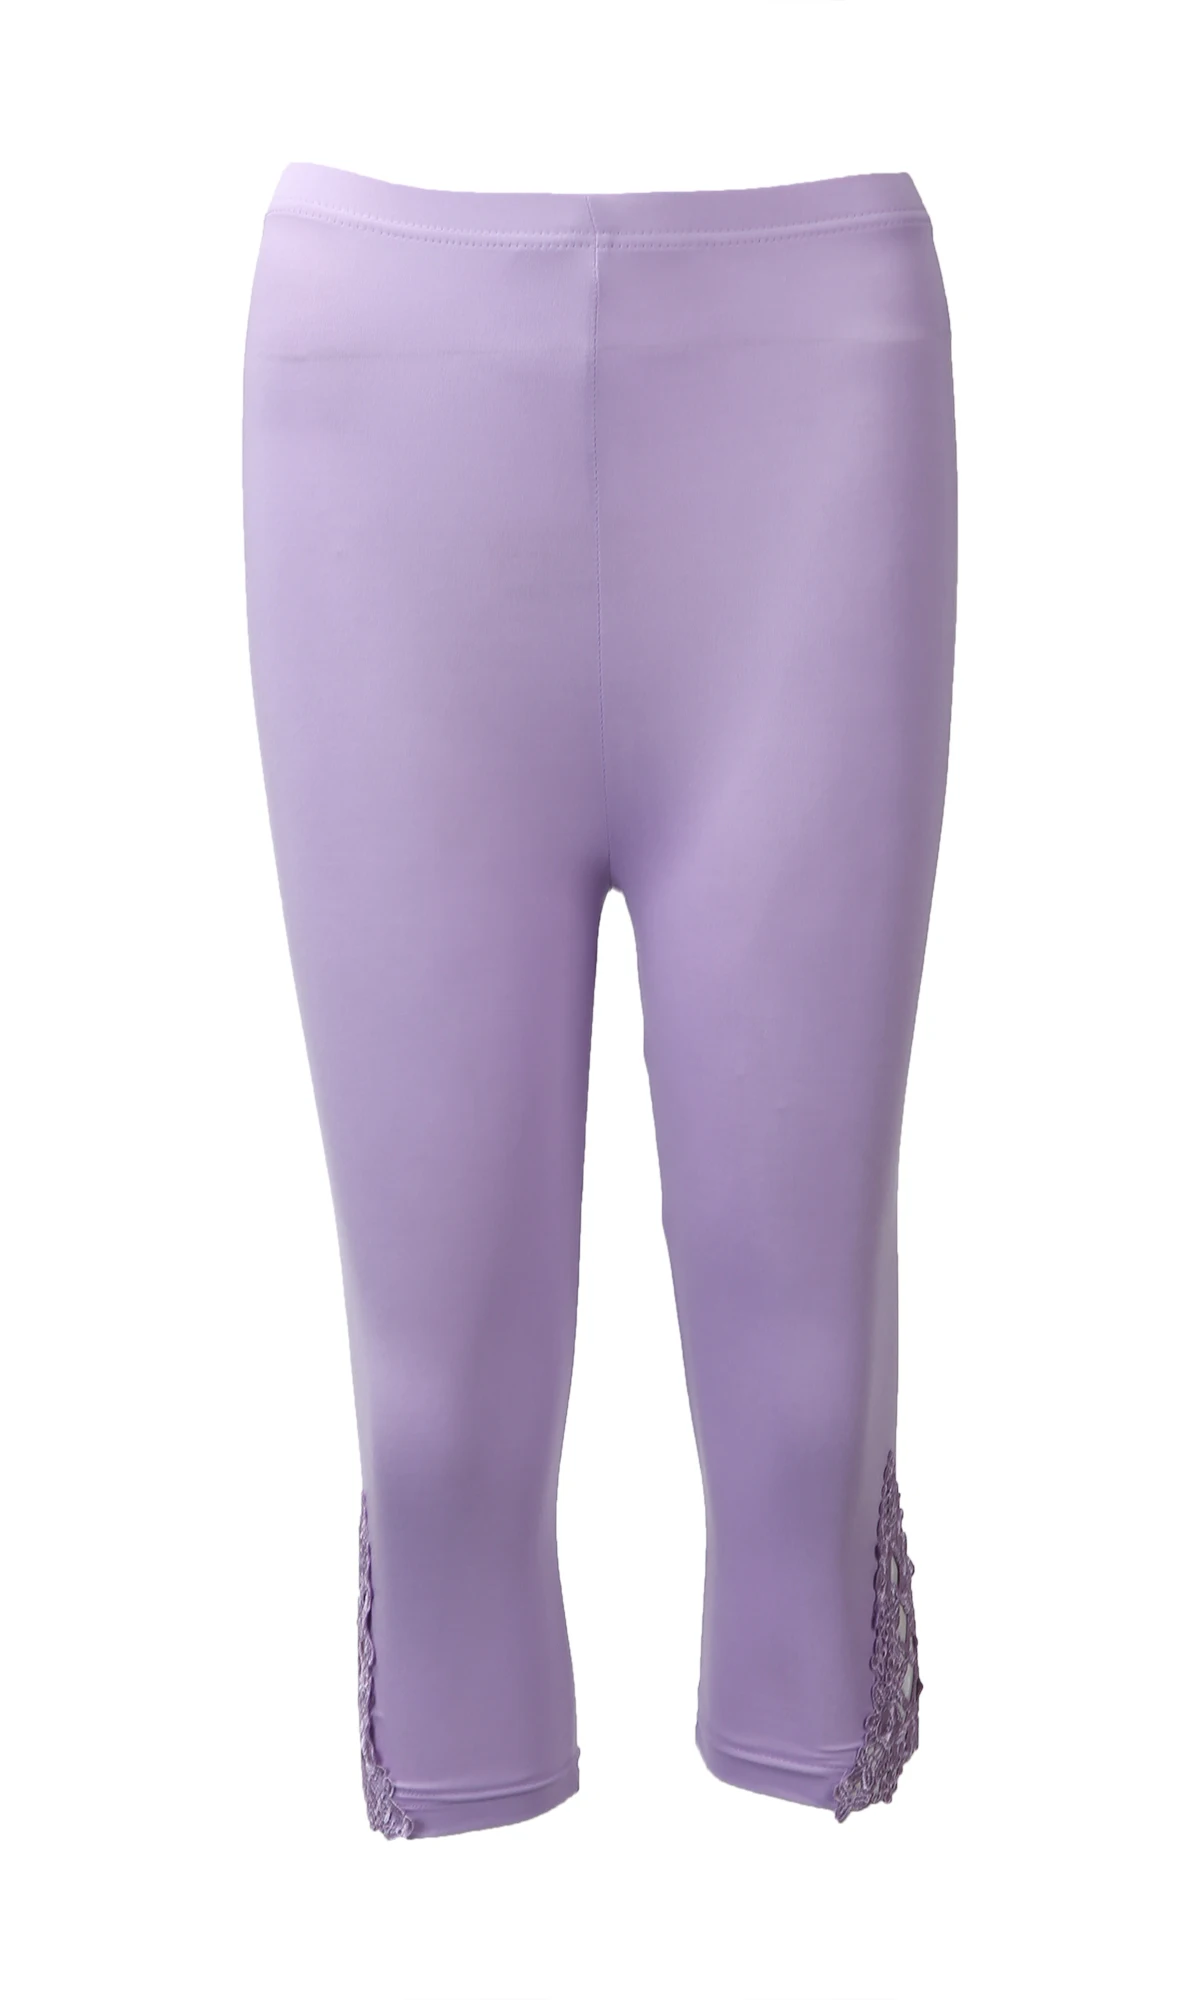 Женские летние кружевные штаны, вязаные крючком обтягивающие Стрейчевые укороченные брюки, легинсы, Капри, длинные леггинсы, летние штаны, 6 цветов - Цвет: Фиолетовый